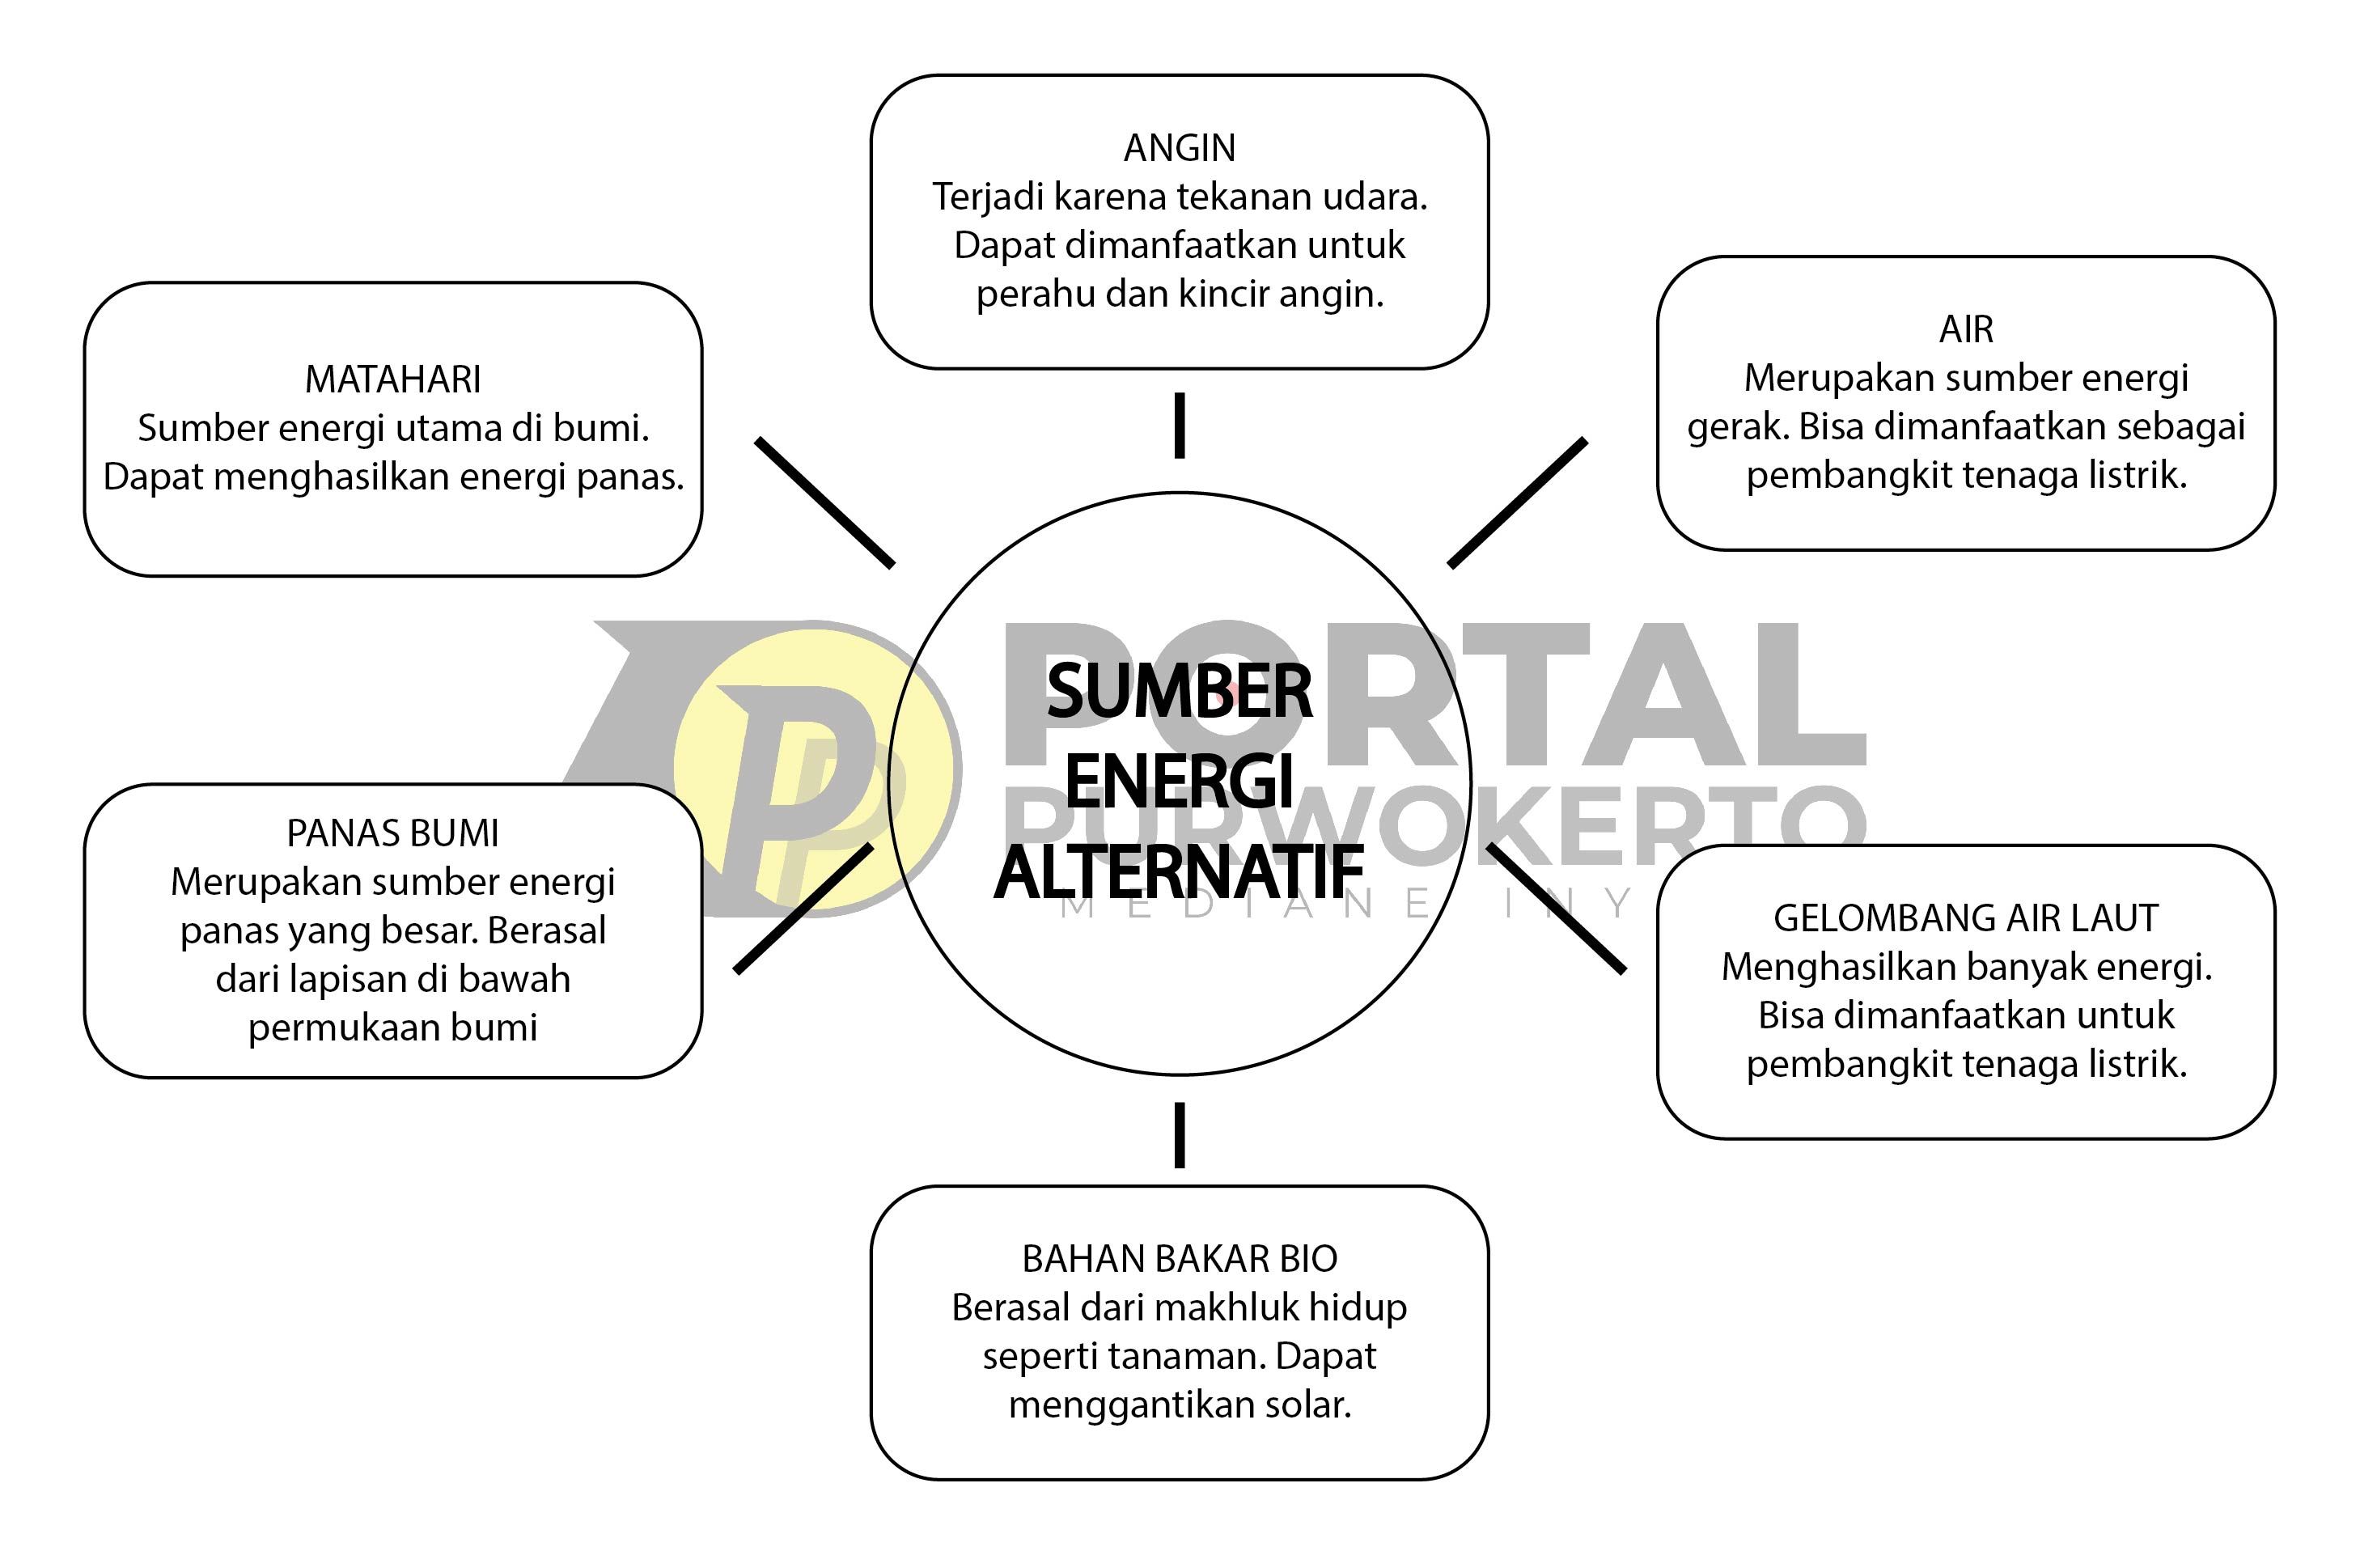 Apa manfaat menghemat energi